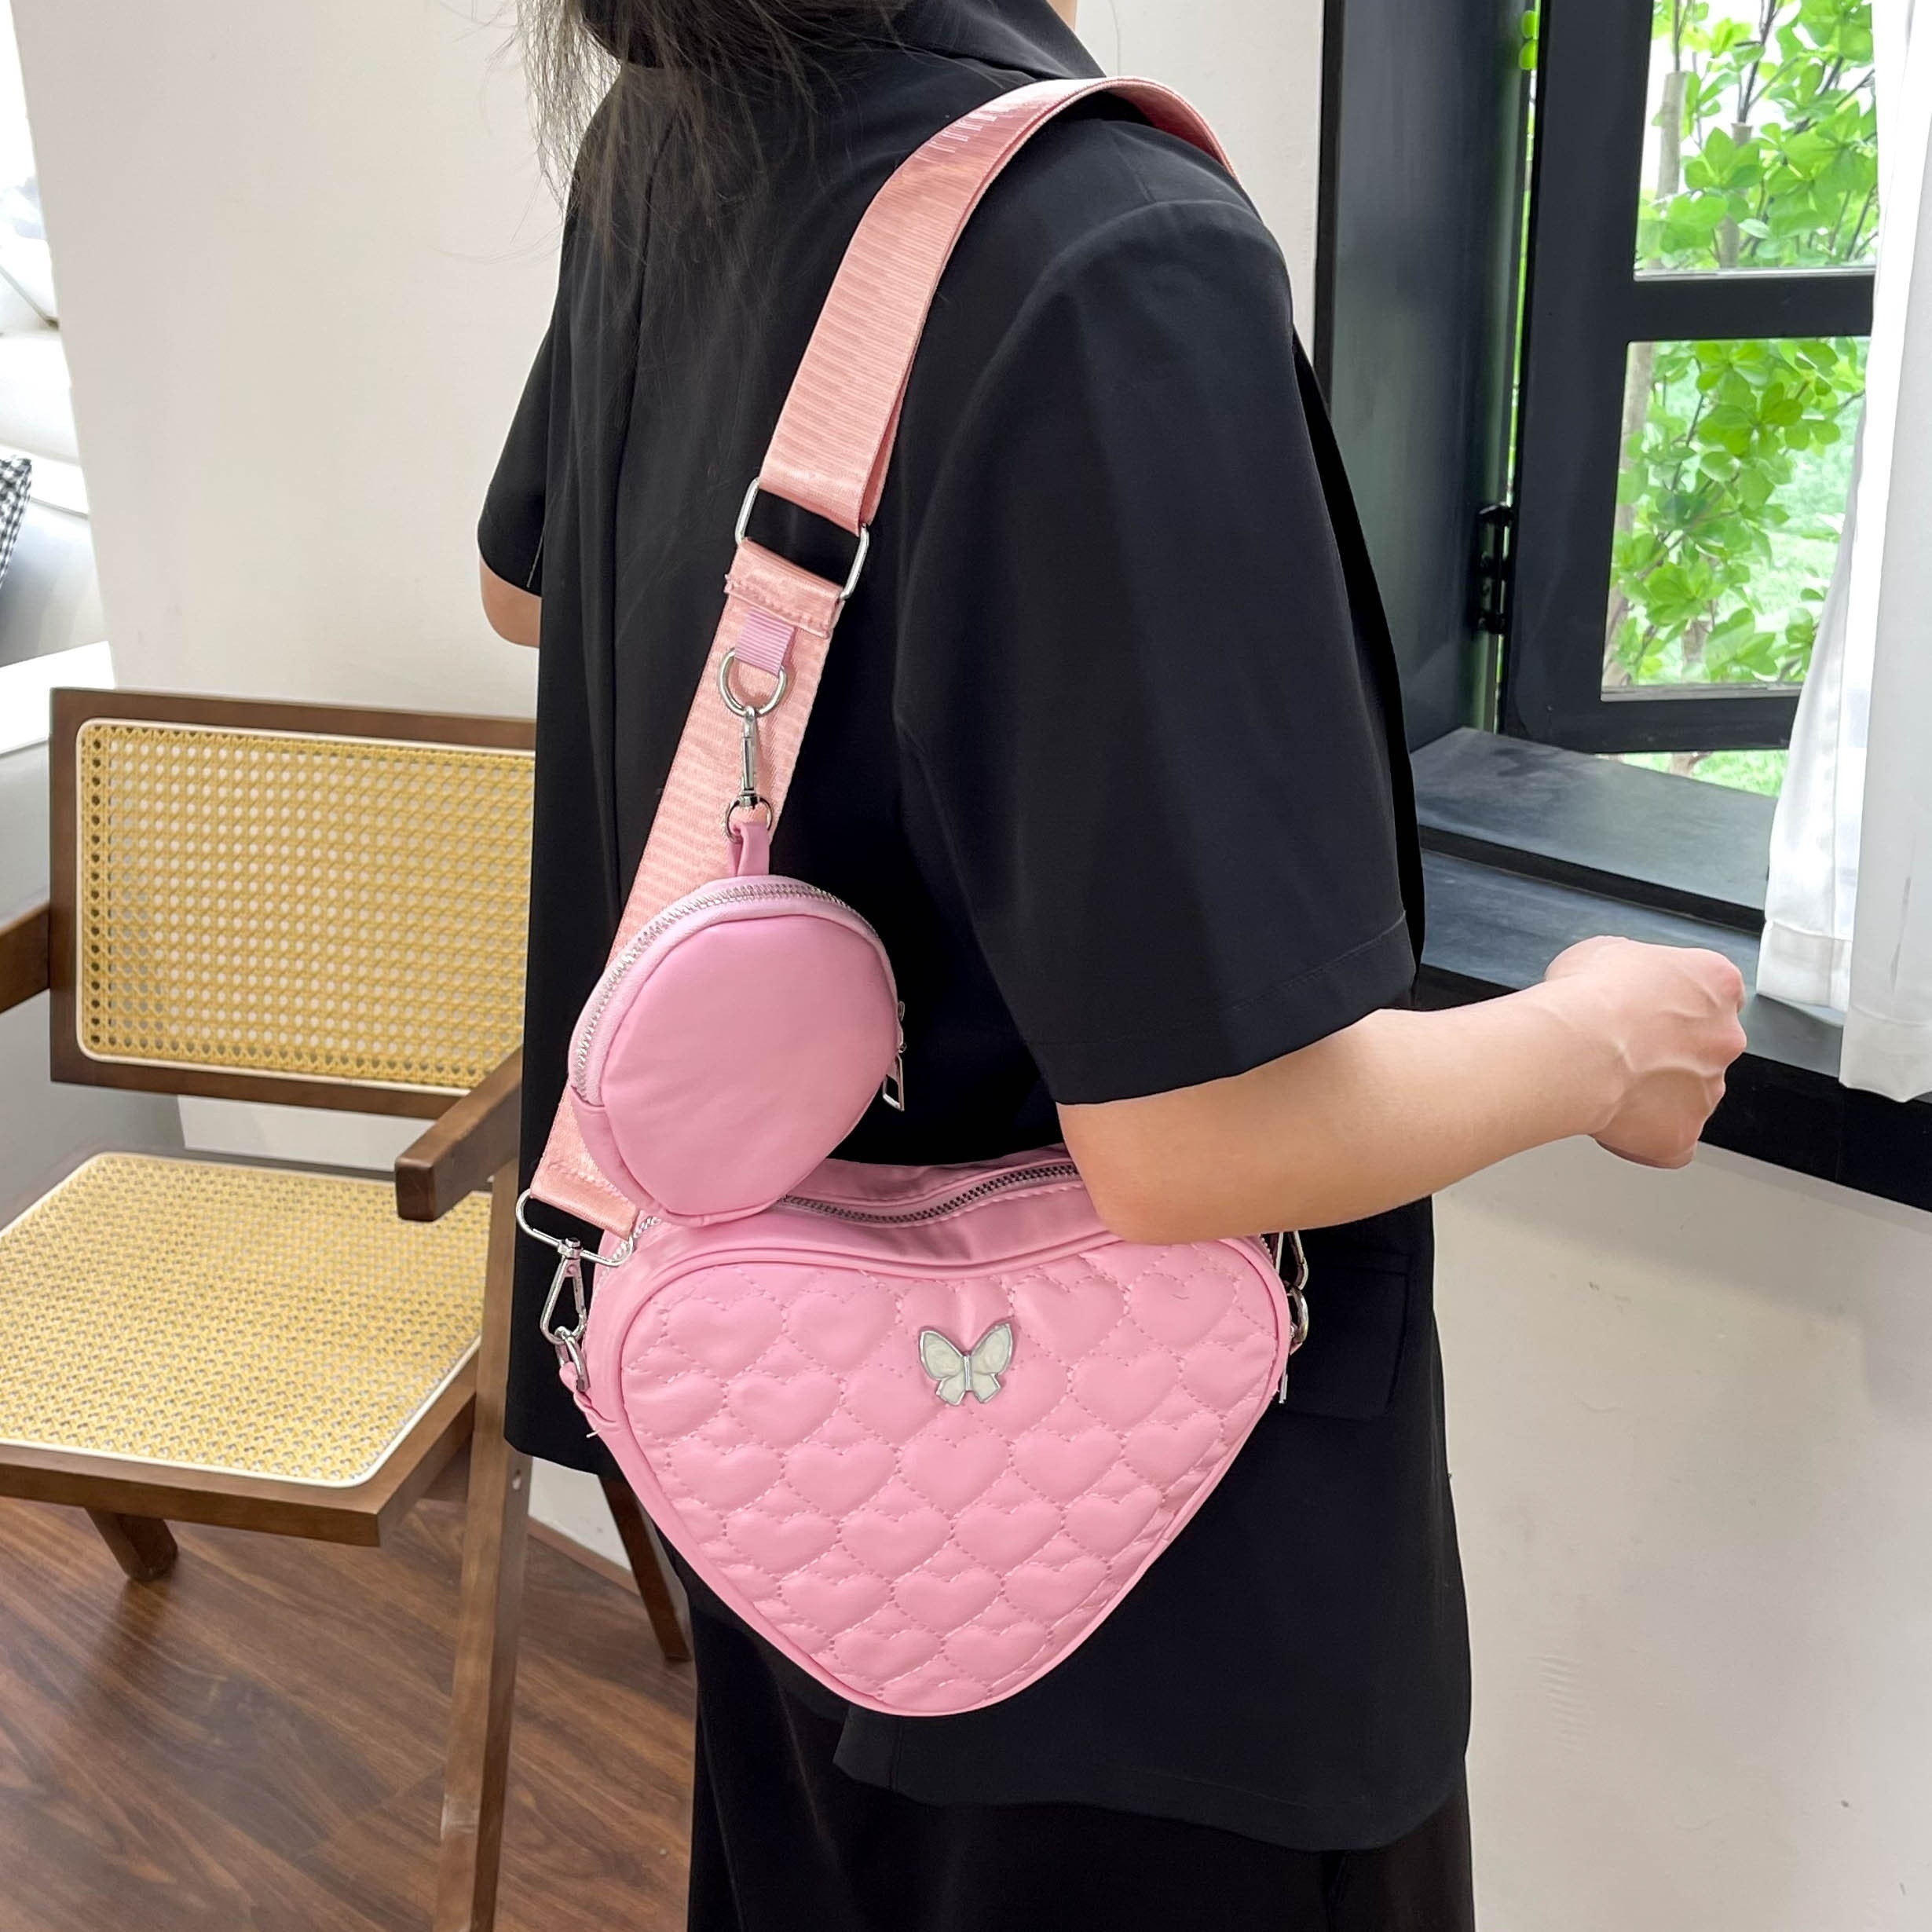 3d Heart Heart Shape Crossbody Bag, Pu Leather Textured Bag